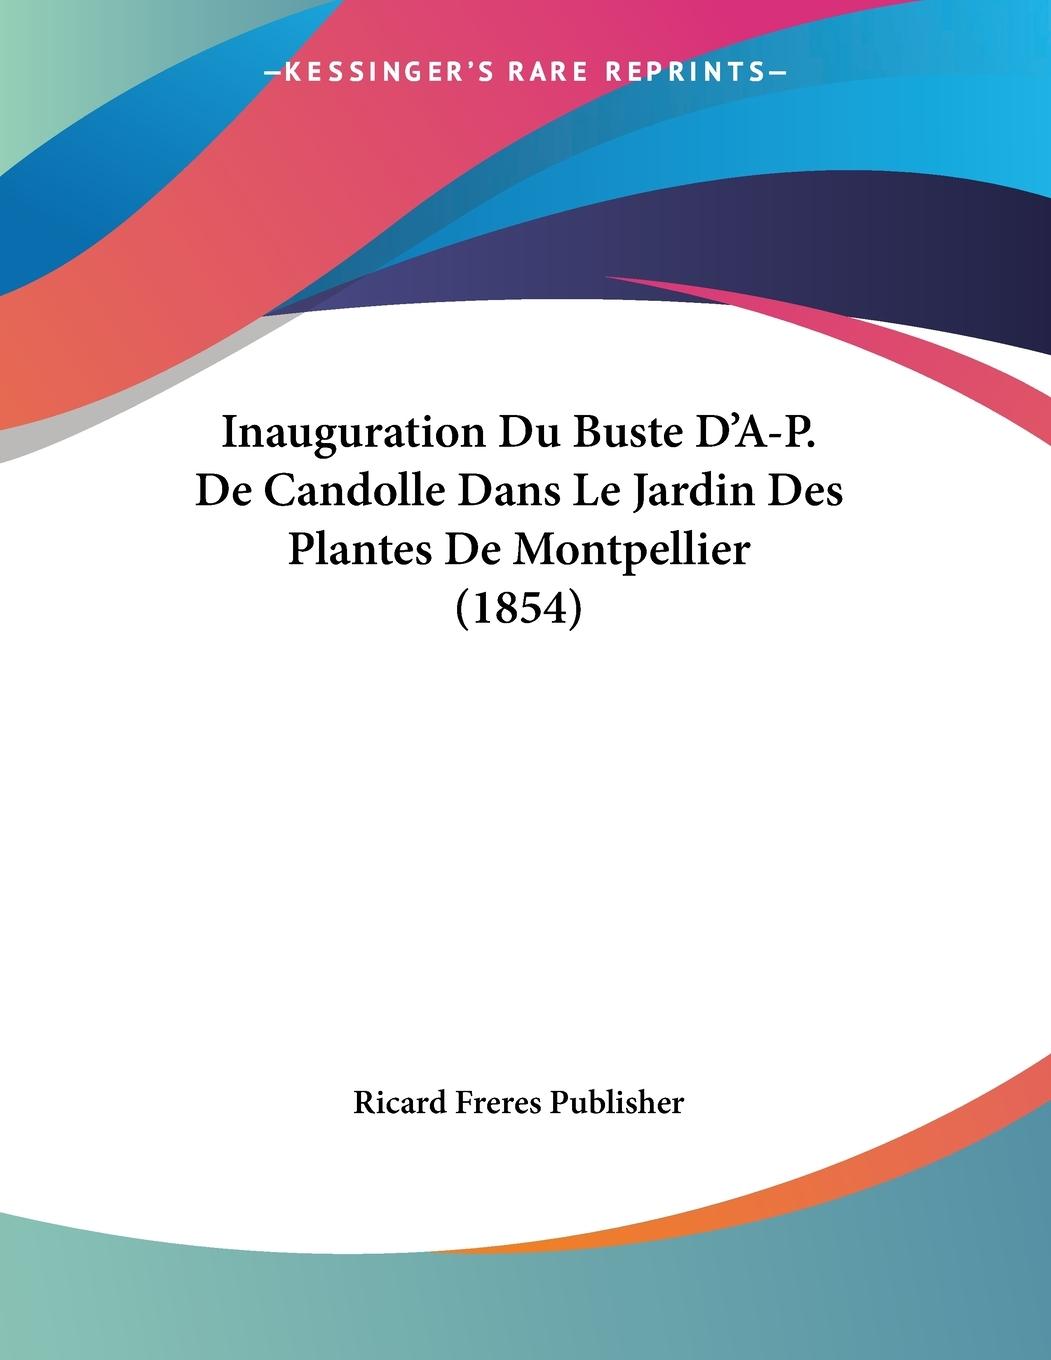 Inauguration Du Buste D A-P. De Candolle Dans Le Jardin Des Plantes De Montpellier (1854) - Ricard Freres Publisher